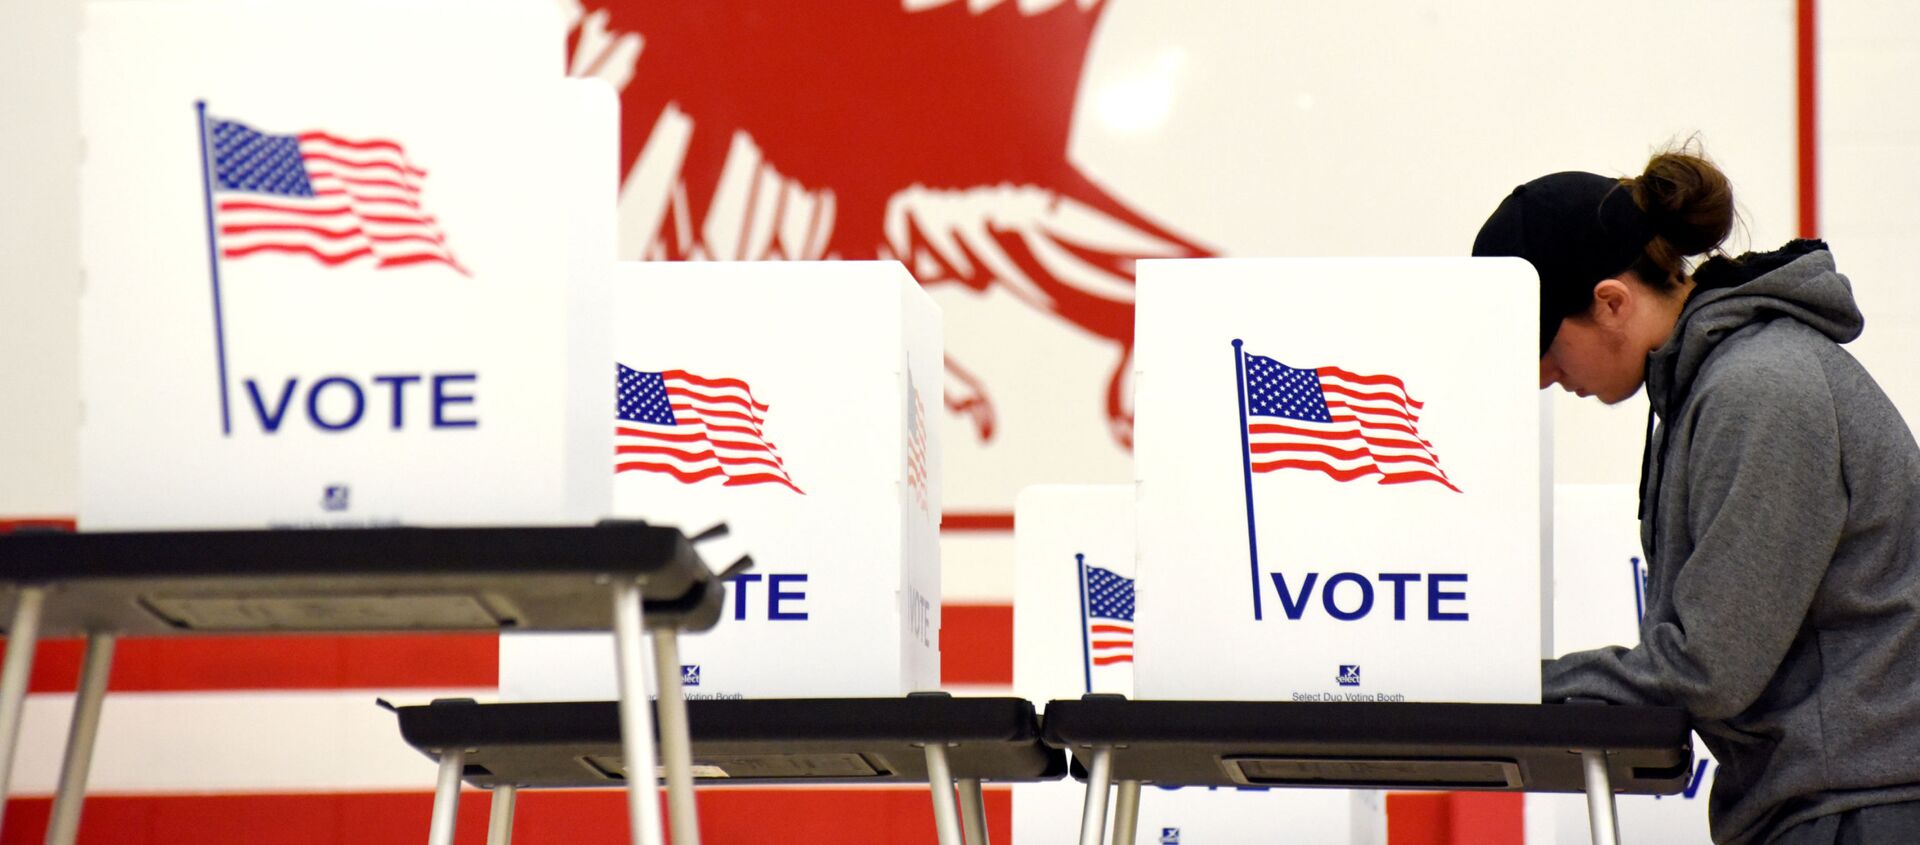 Голосование на примежуточных выборах на избирательном участке в Мэдисоне, штат Висконсин, США. 6 ноября 2018 - Sputnik Таджикистан, 1920, 19.07.2020